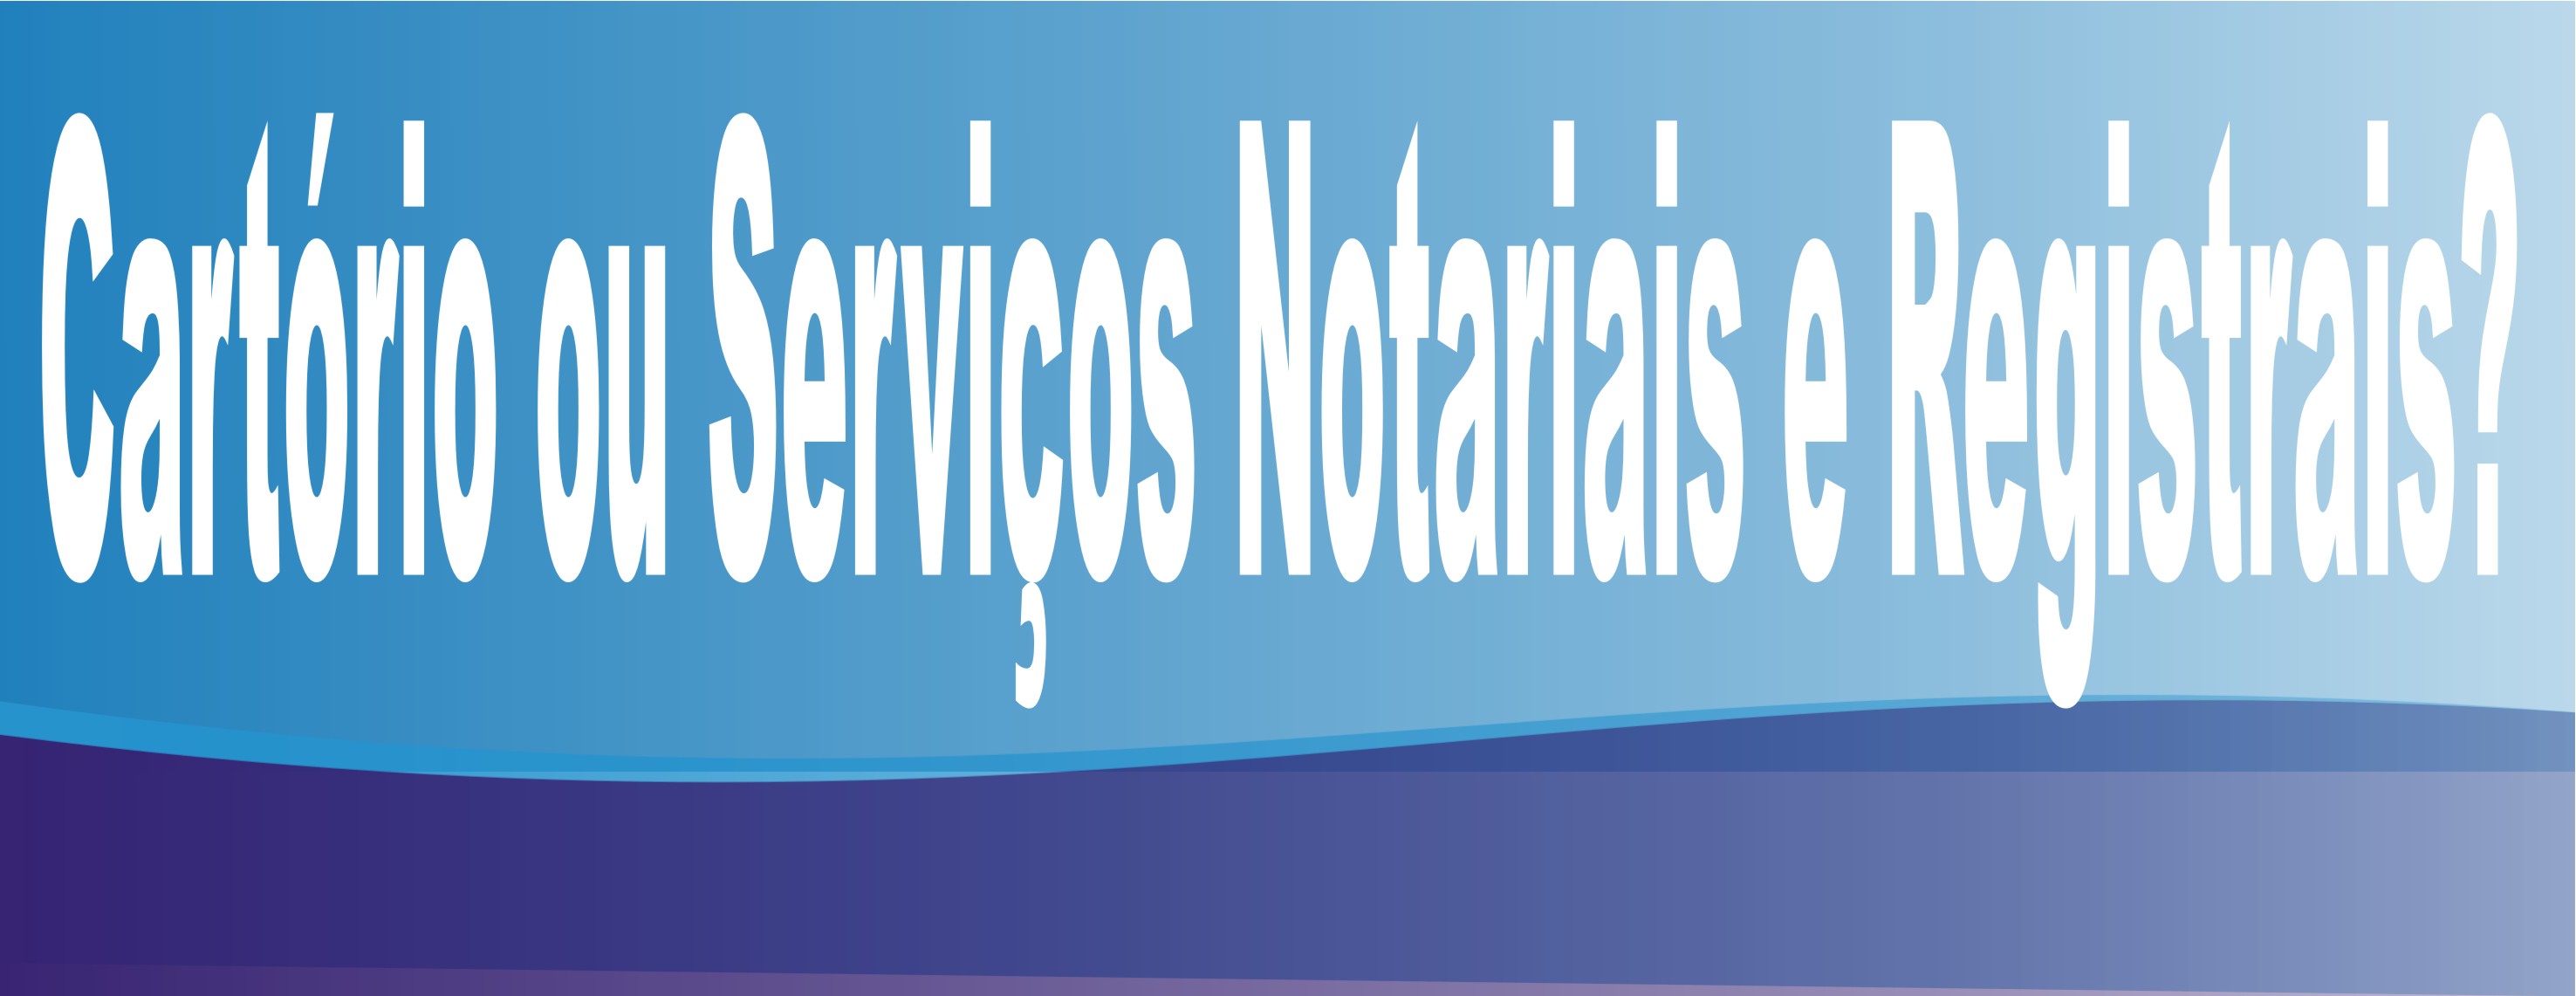 cartorio ou serviço notarial